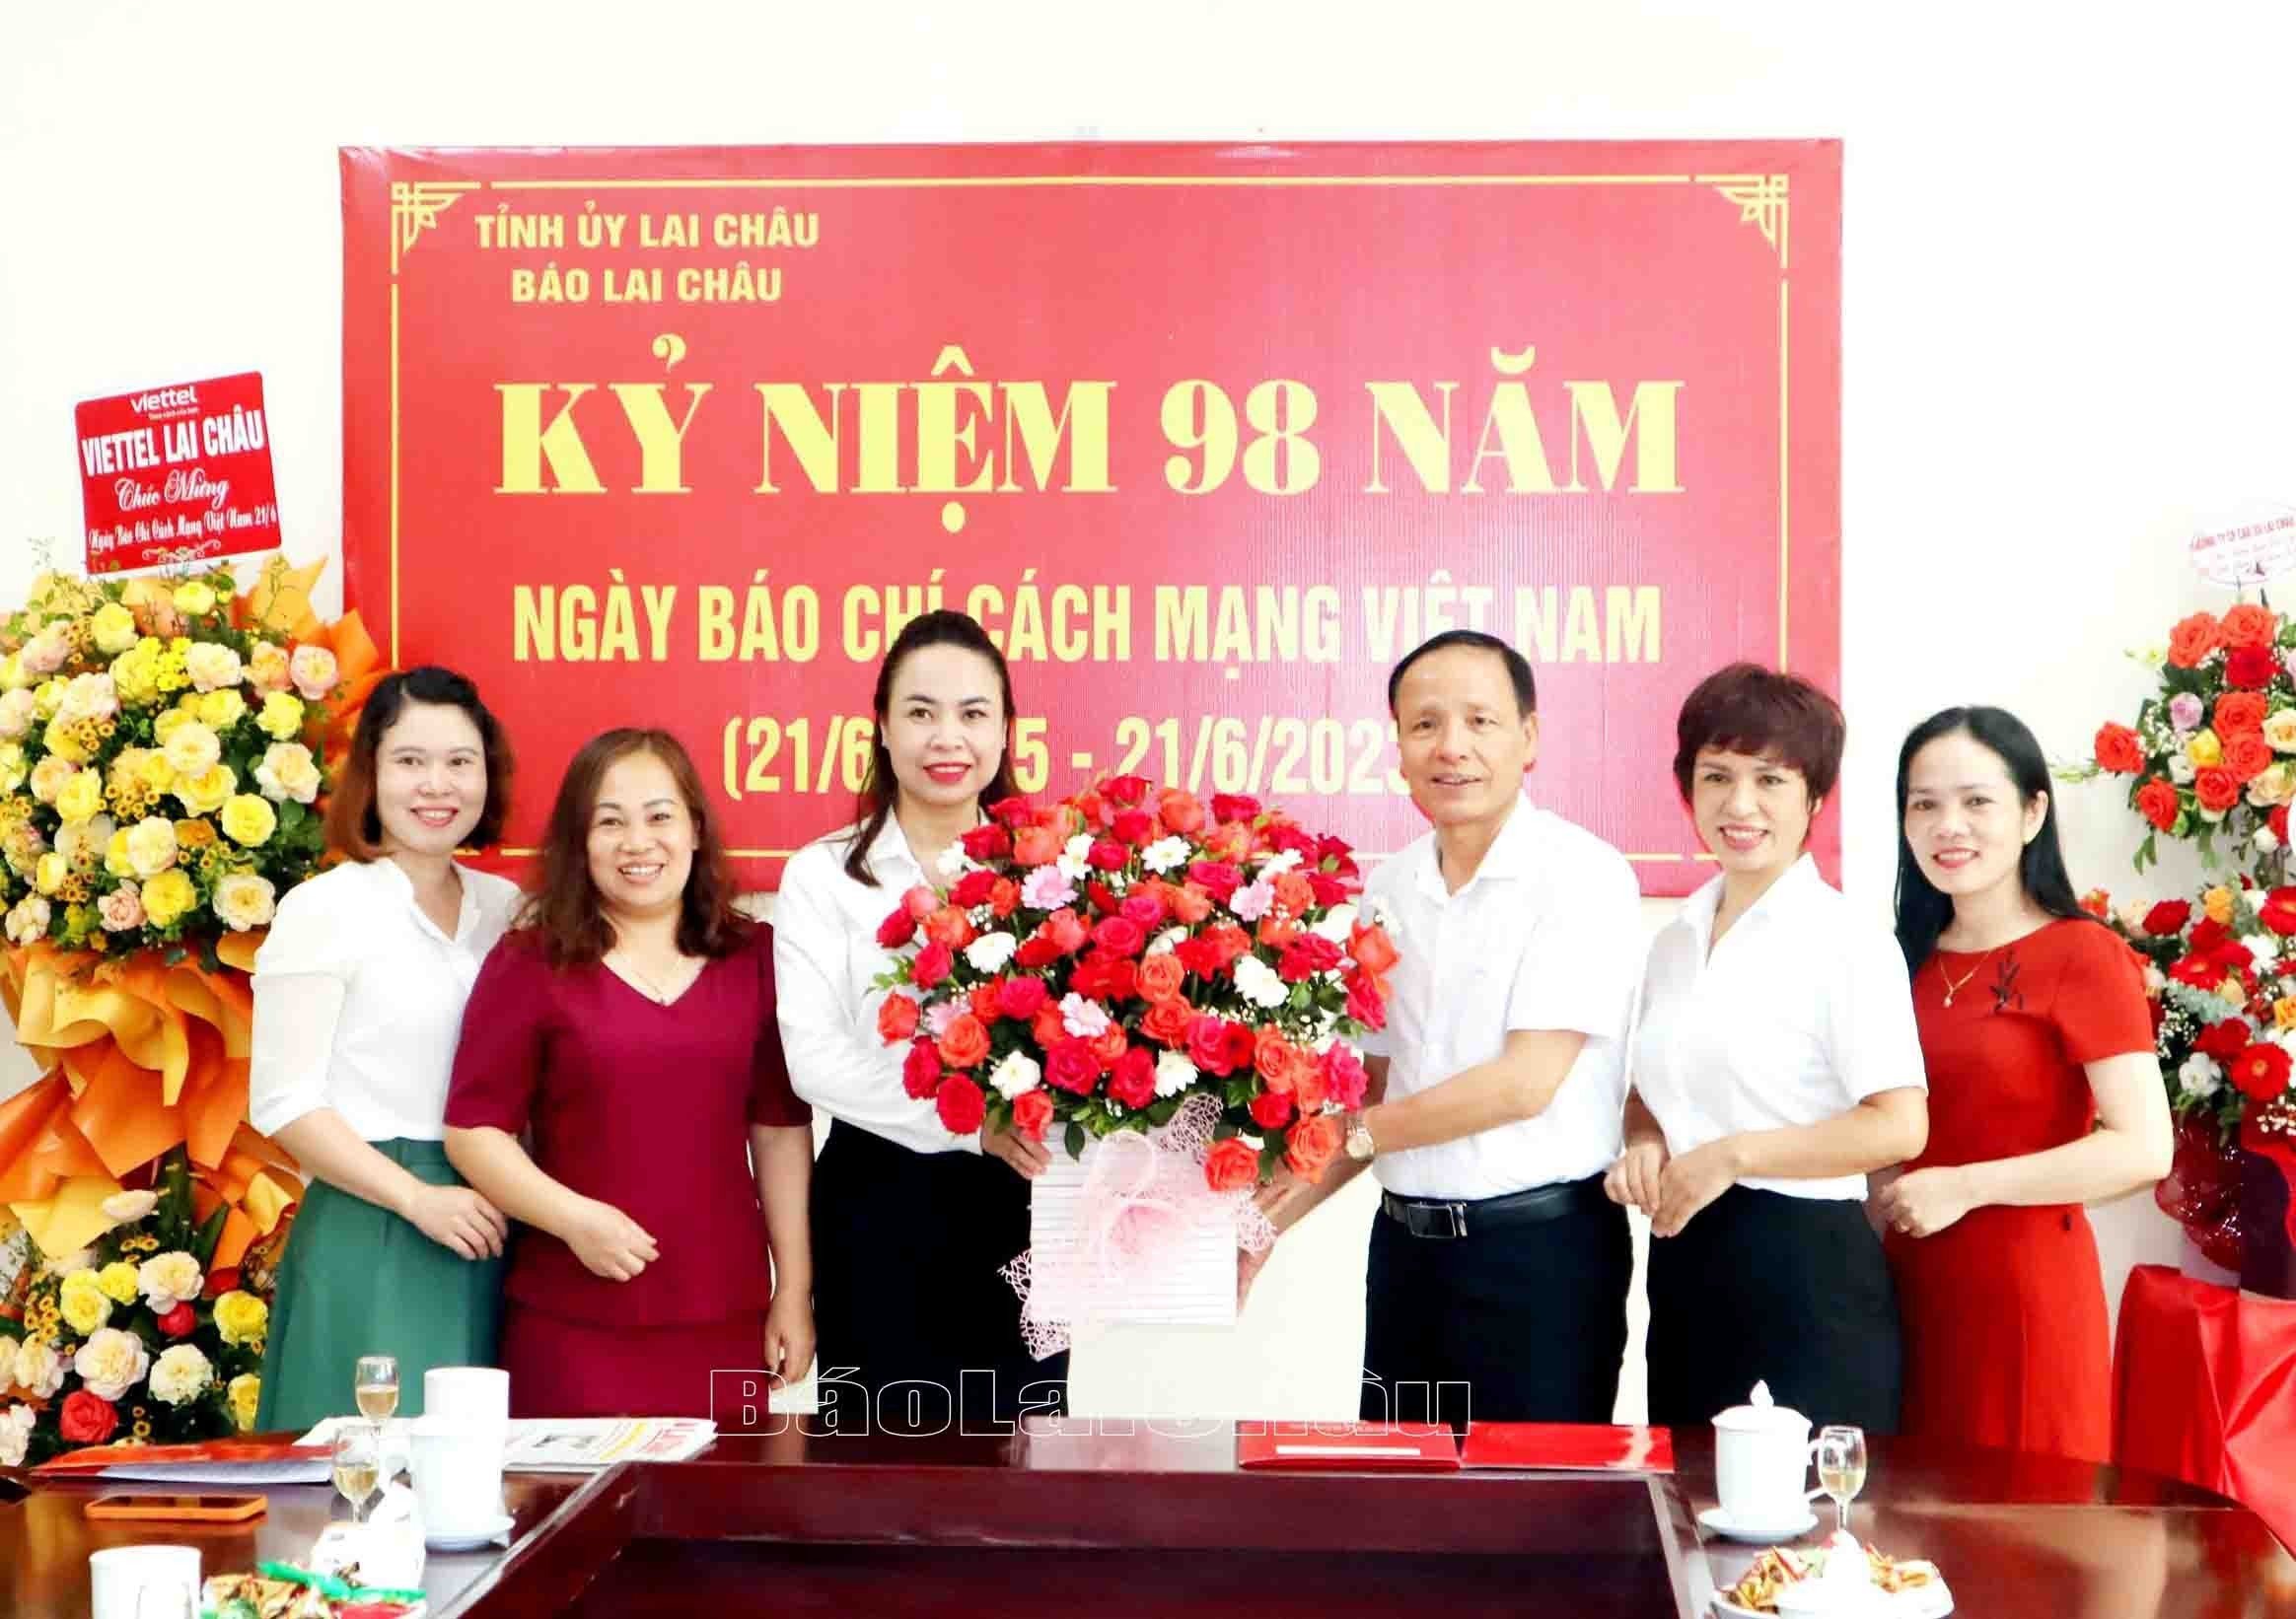 Ngân hàng Nông nghiệp và Phát triển nông thôn chi nhánh tỉnh chúc mừng Báo Lai Châu nhân kỷ niệm 98 năm Ngày Báo chí cách mạng Việt Nam.